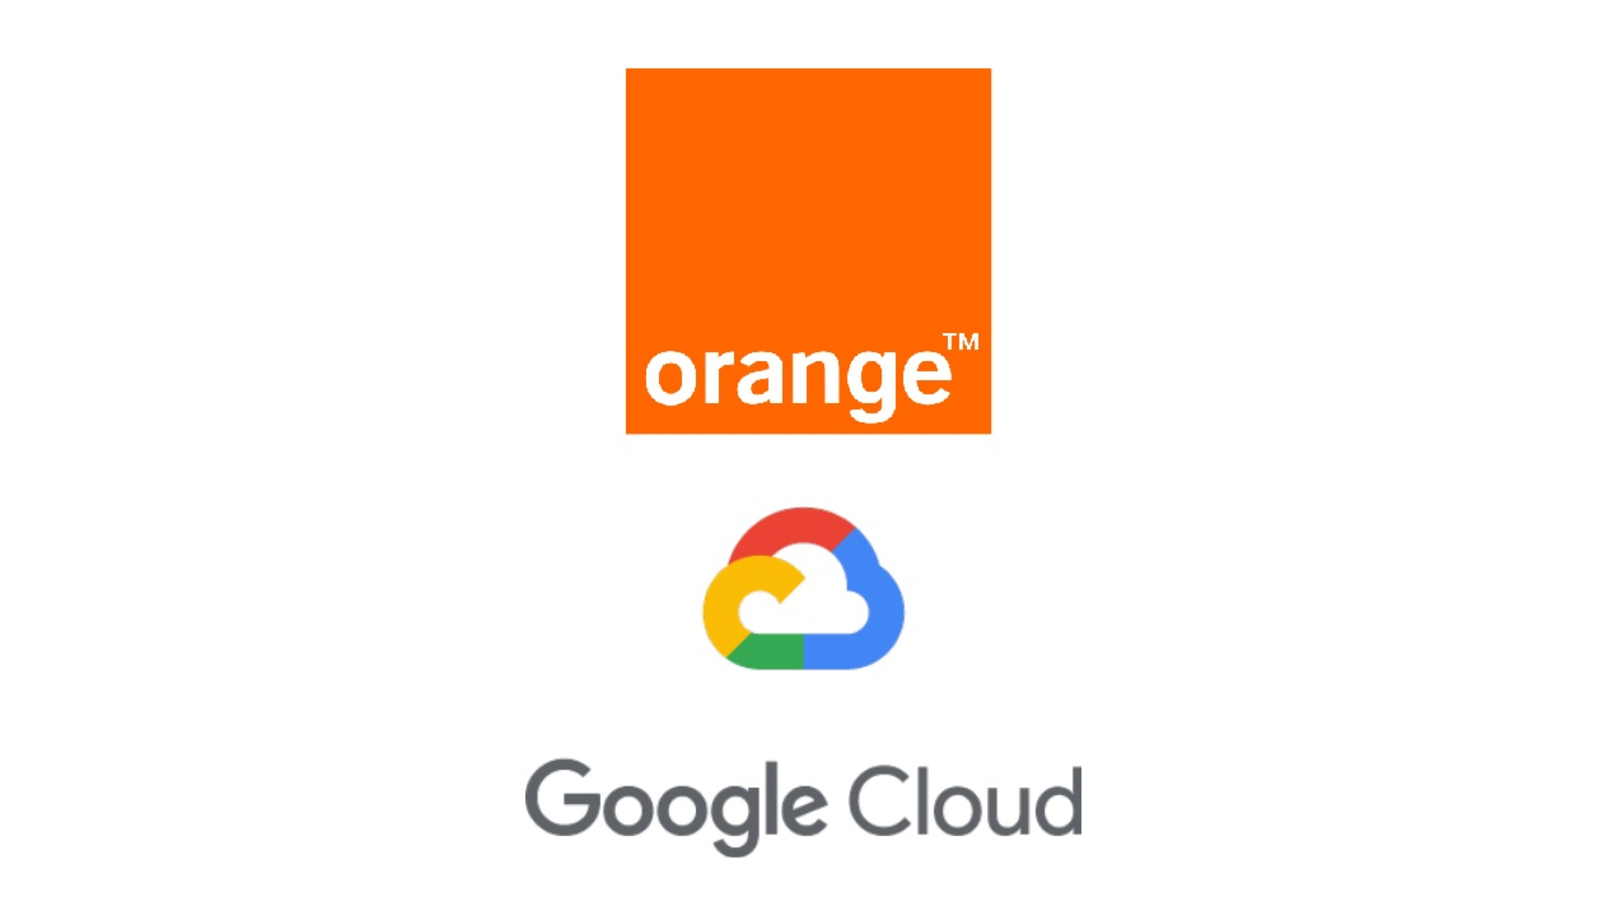 Google Cloud et Orange signent un partenariat autour des services Cloud et de l'edge computing